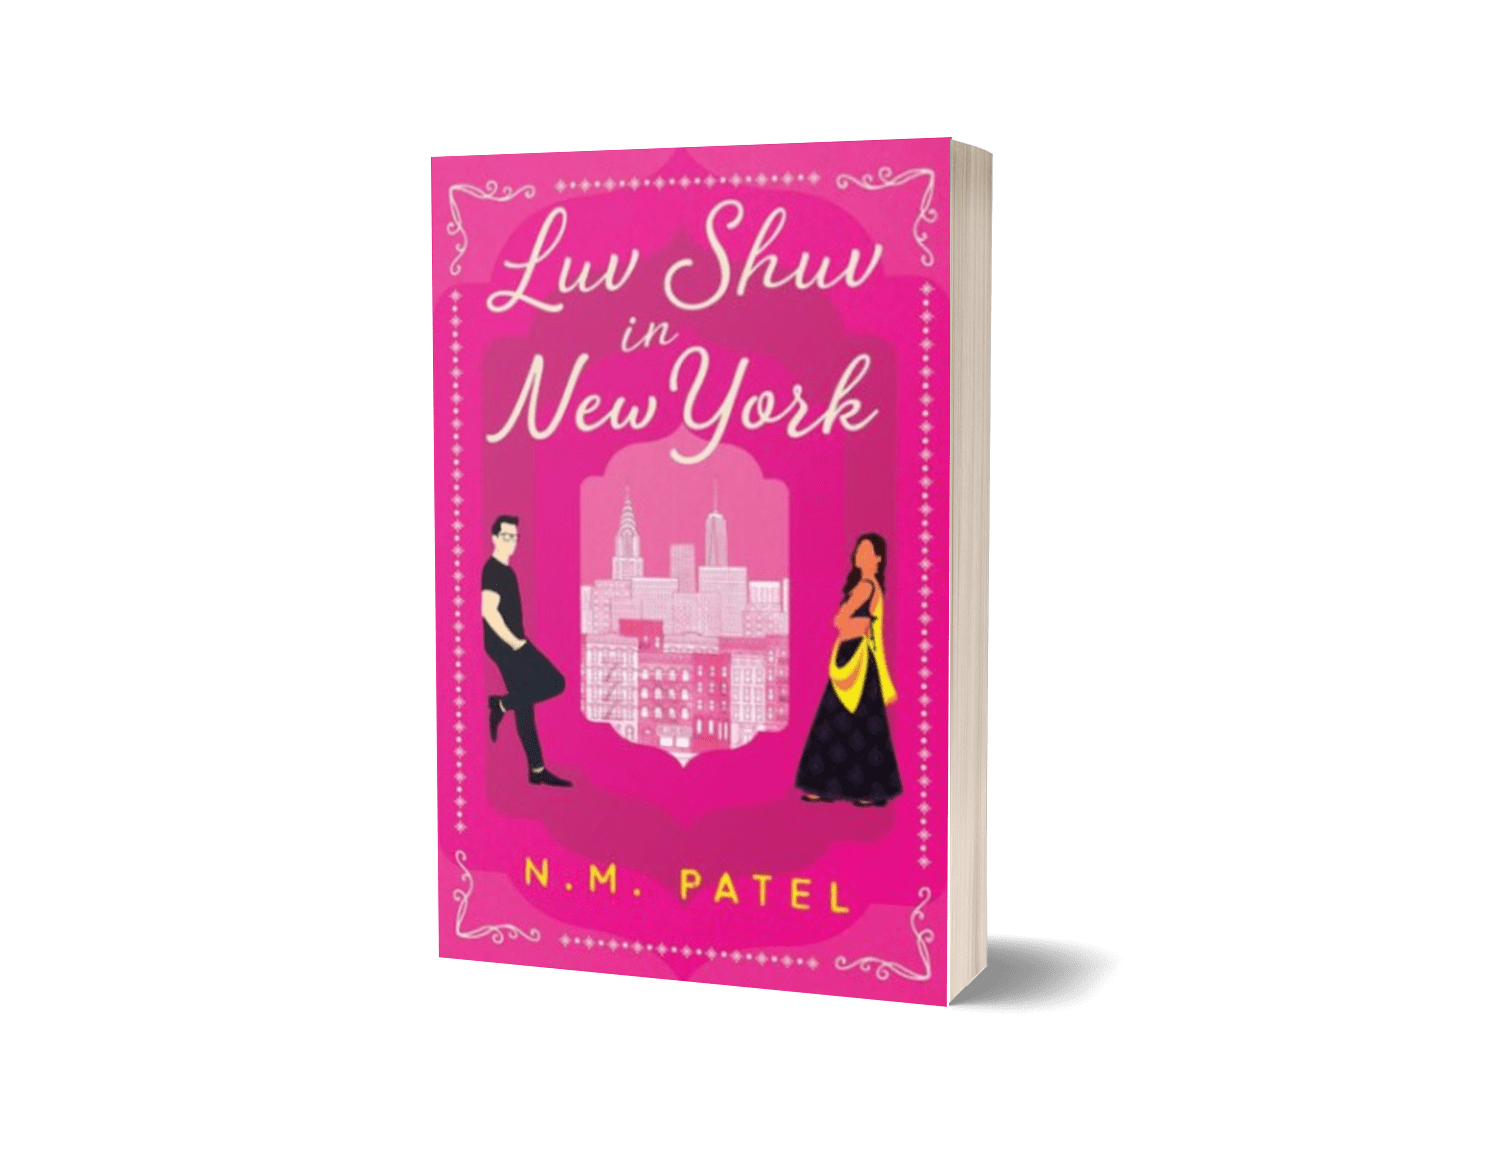 Luv Shuv In New York by N. M. Patel